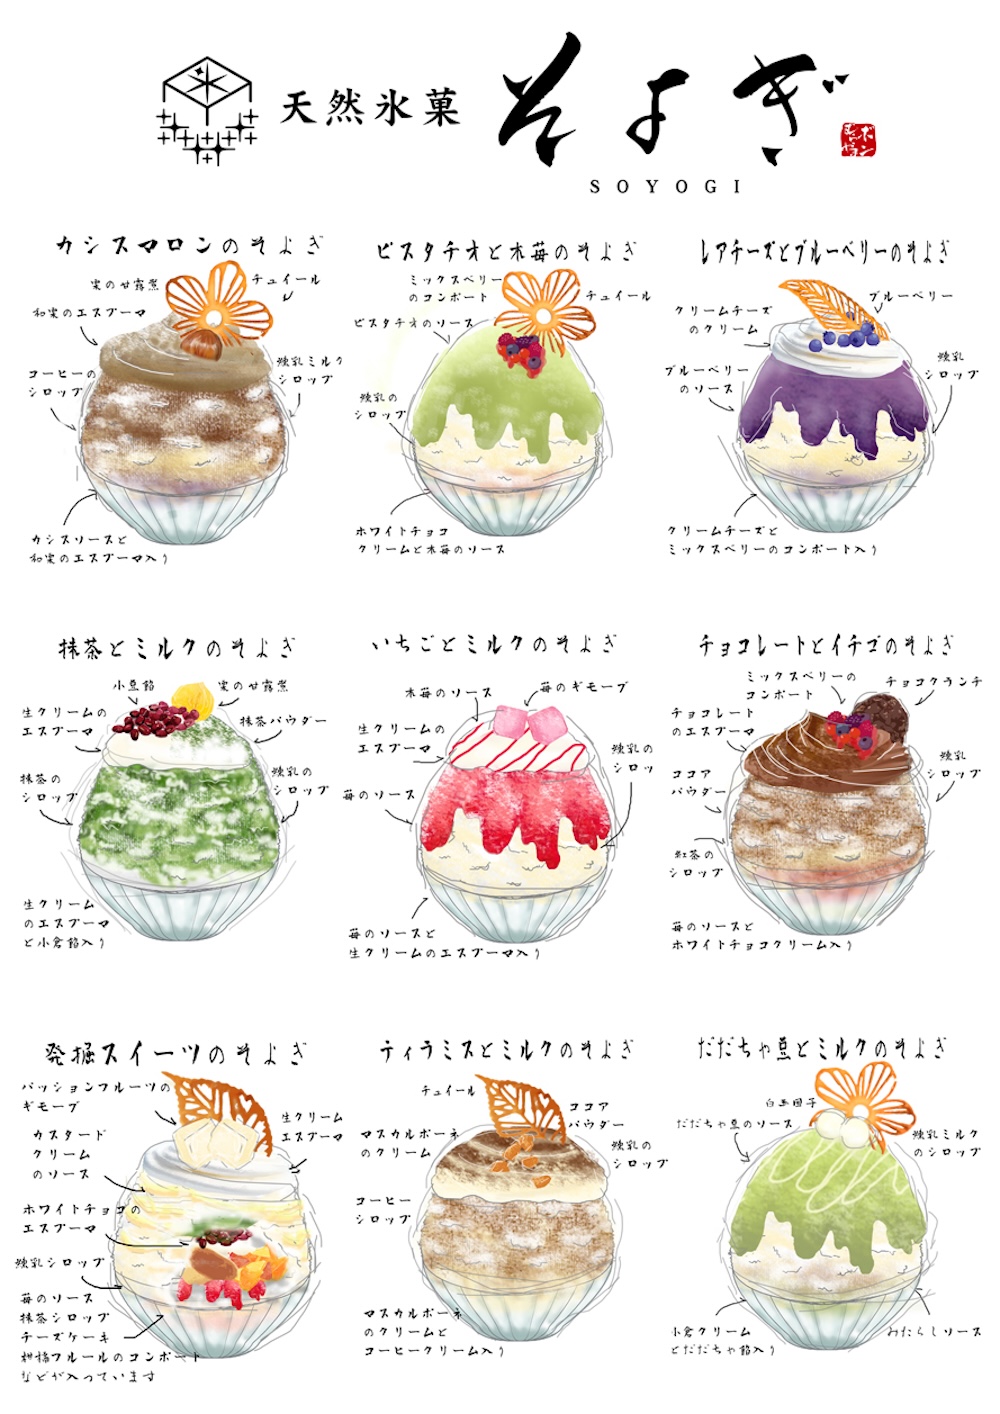 山形県天童市に7月13日、天然氷を用いたかき氷専門店「天然氷菓　そよぎ」がオープンする。